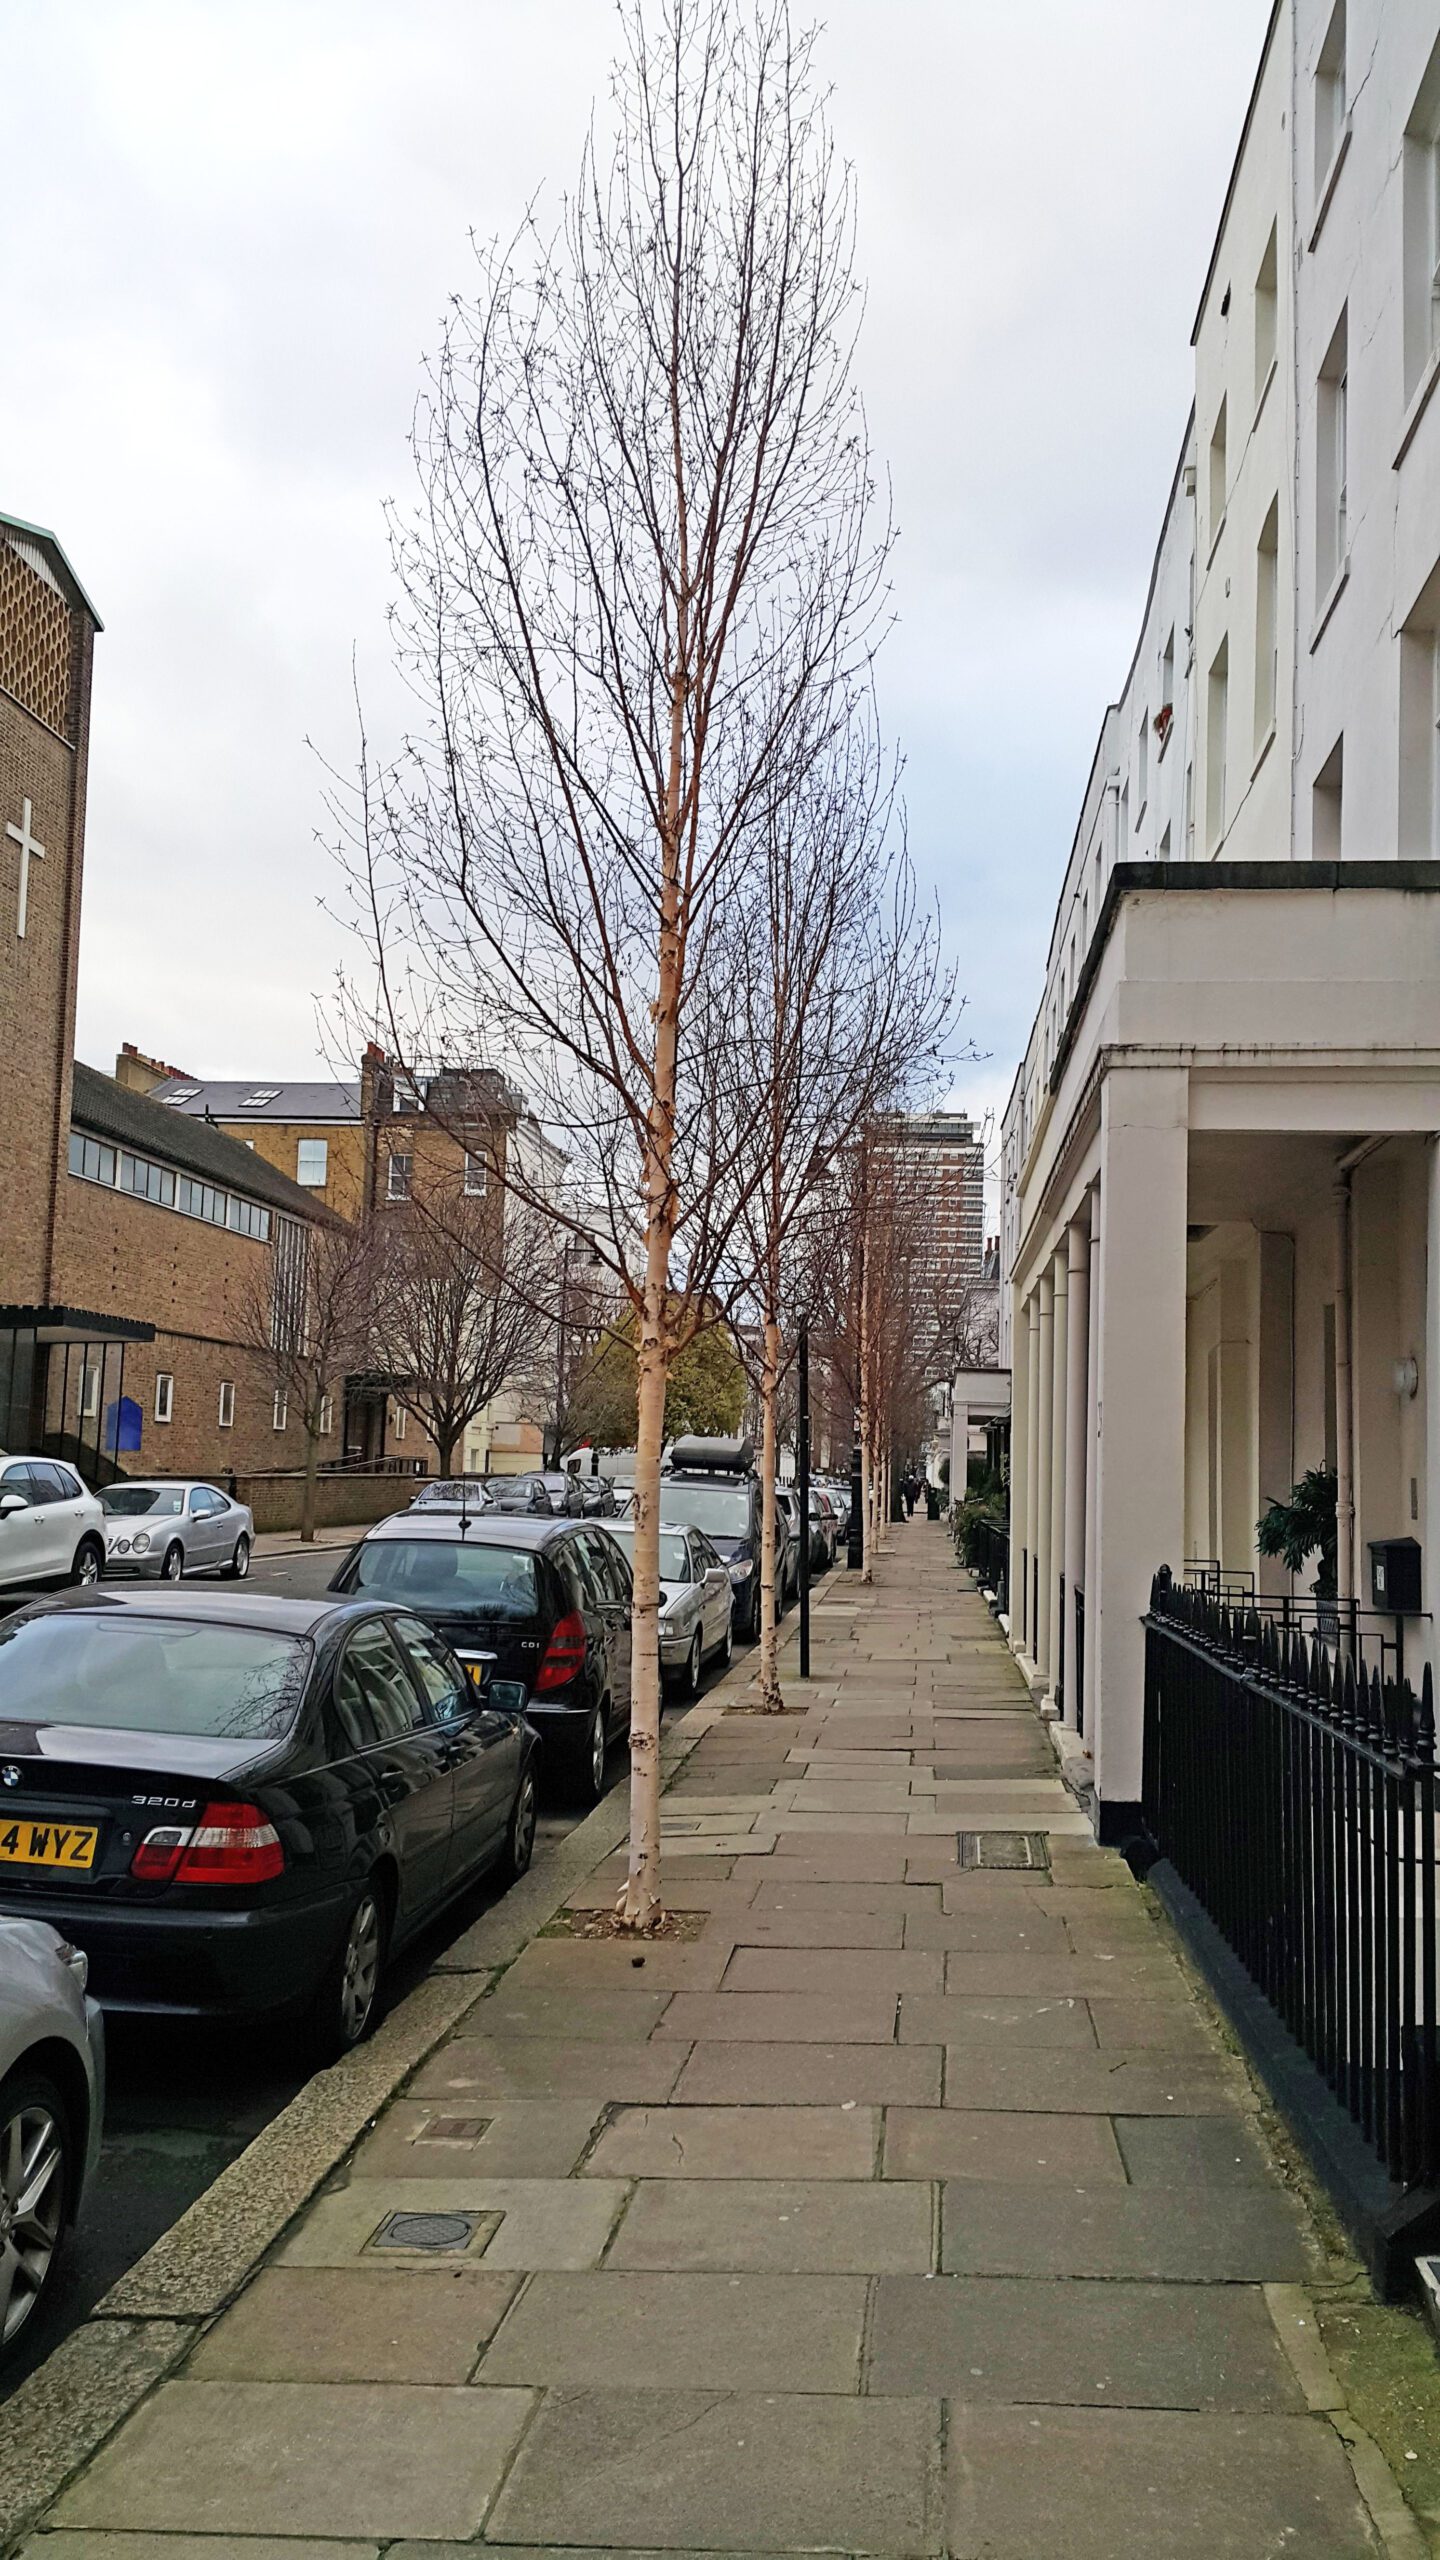 Betula Edinburgh semi-mature street trees in winter